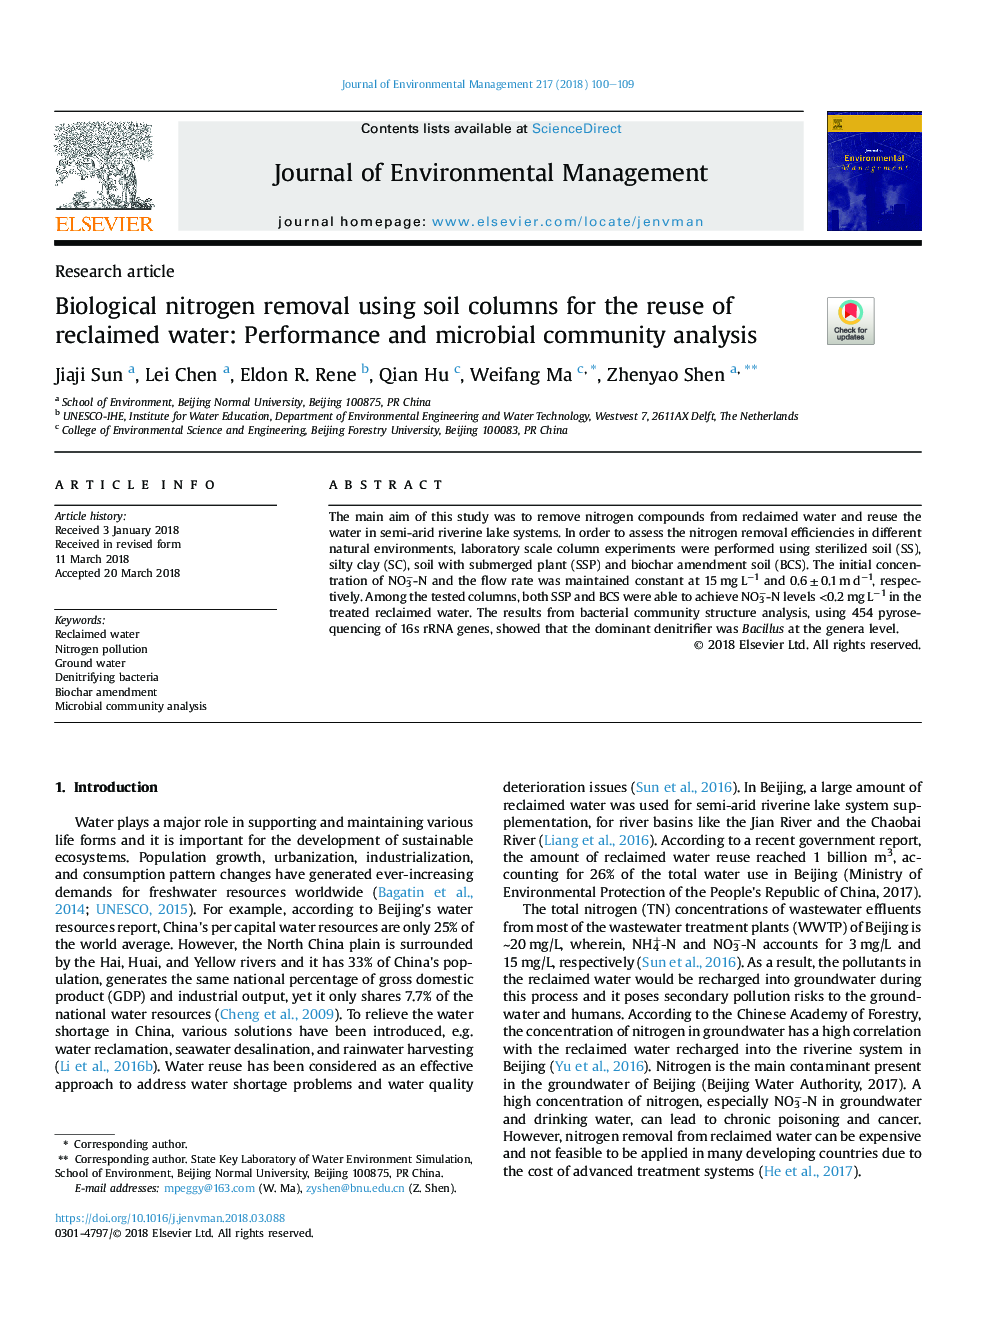 حذف نیتروژن زیستی با استفاده از ستون های خاک برای استفاده مجدد از آب بازیافت: تجزیه و تحلیل عملکرد و جامعه میکروبی 